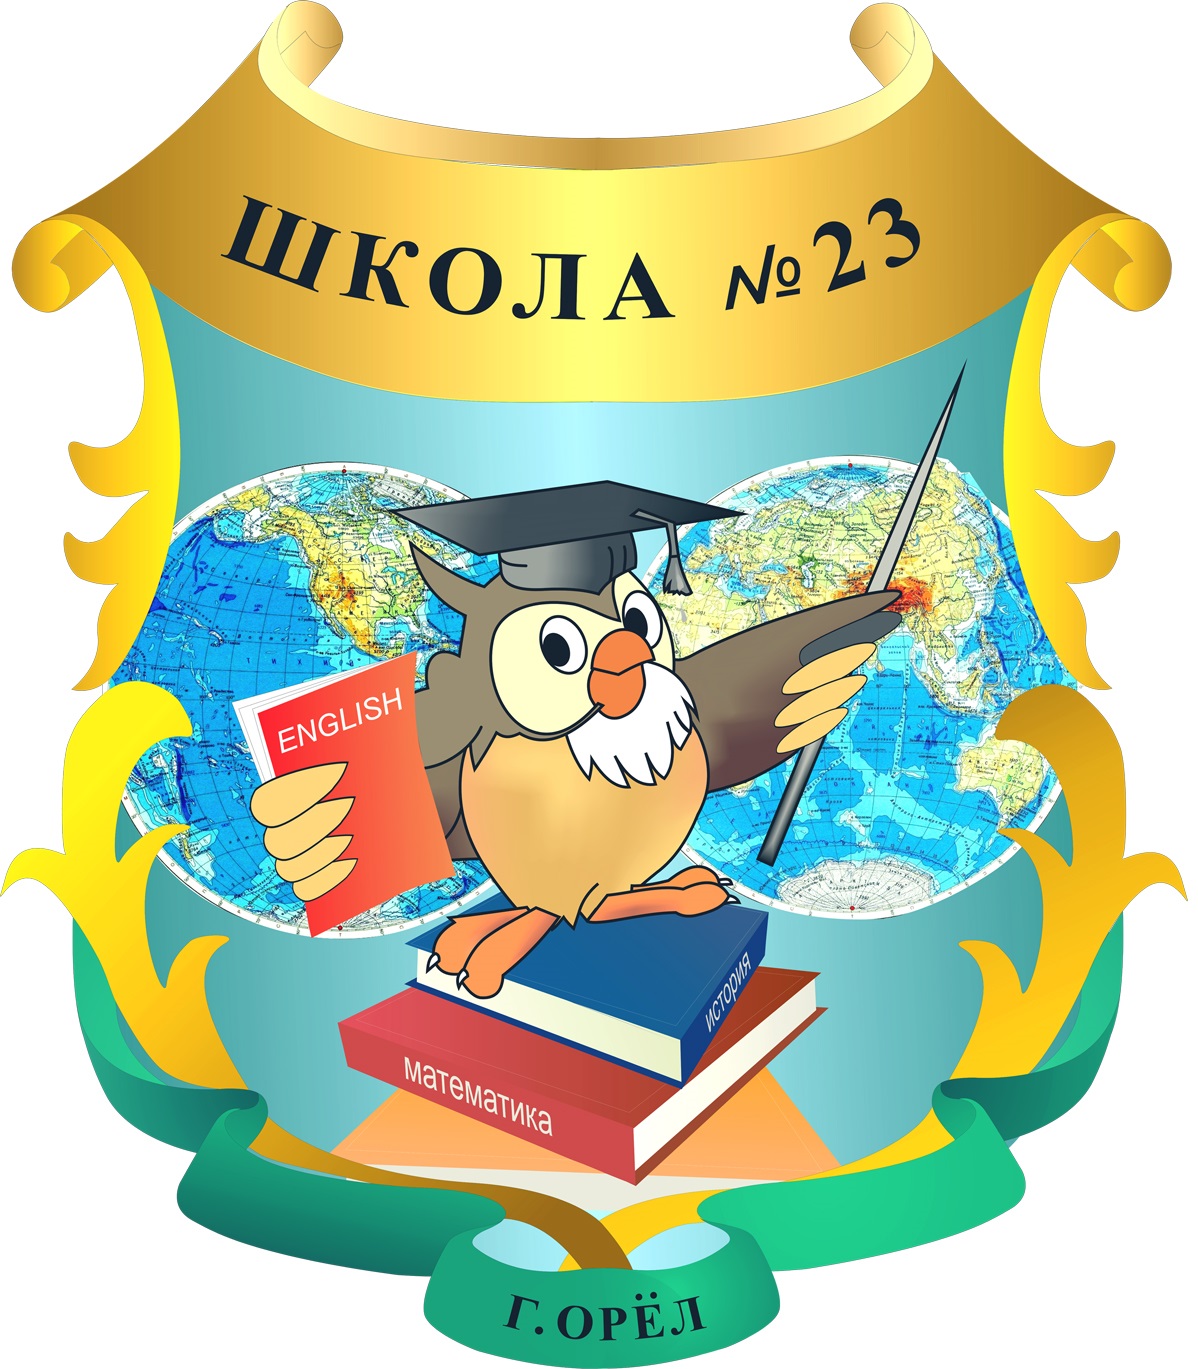 МБОУ - школа № 23 г. Орла